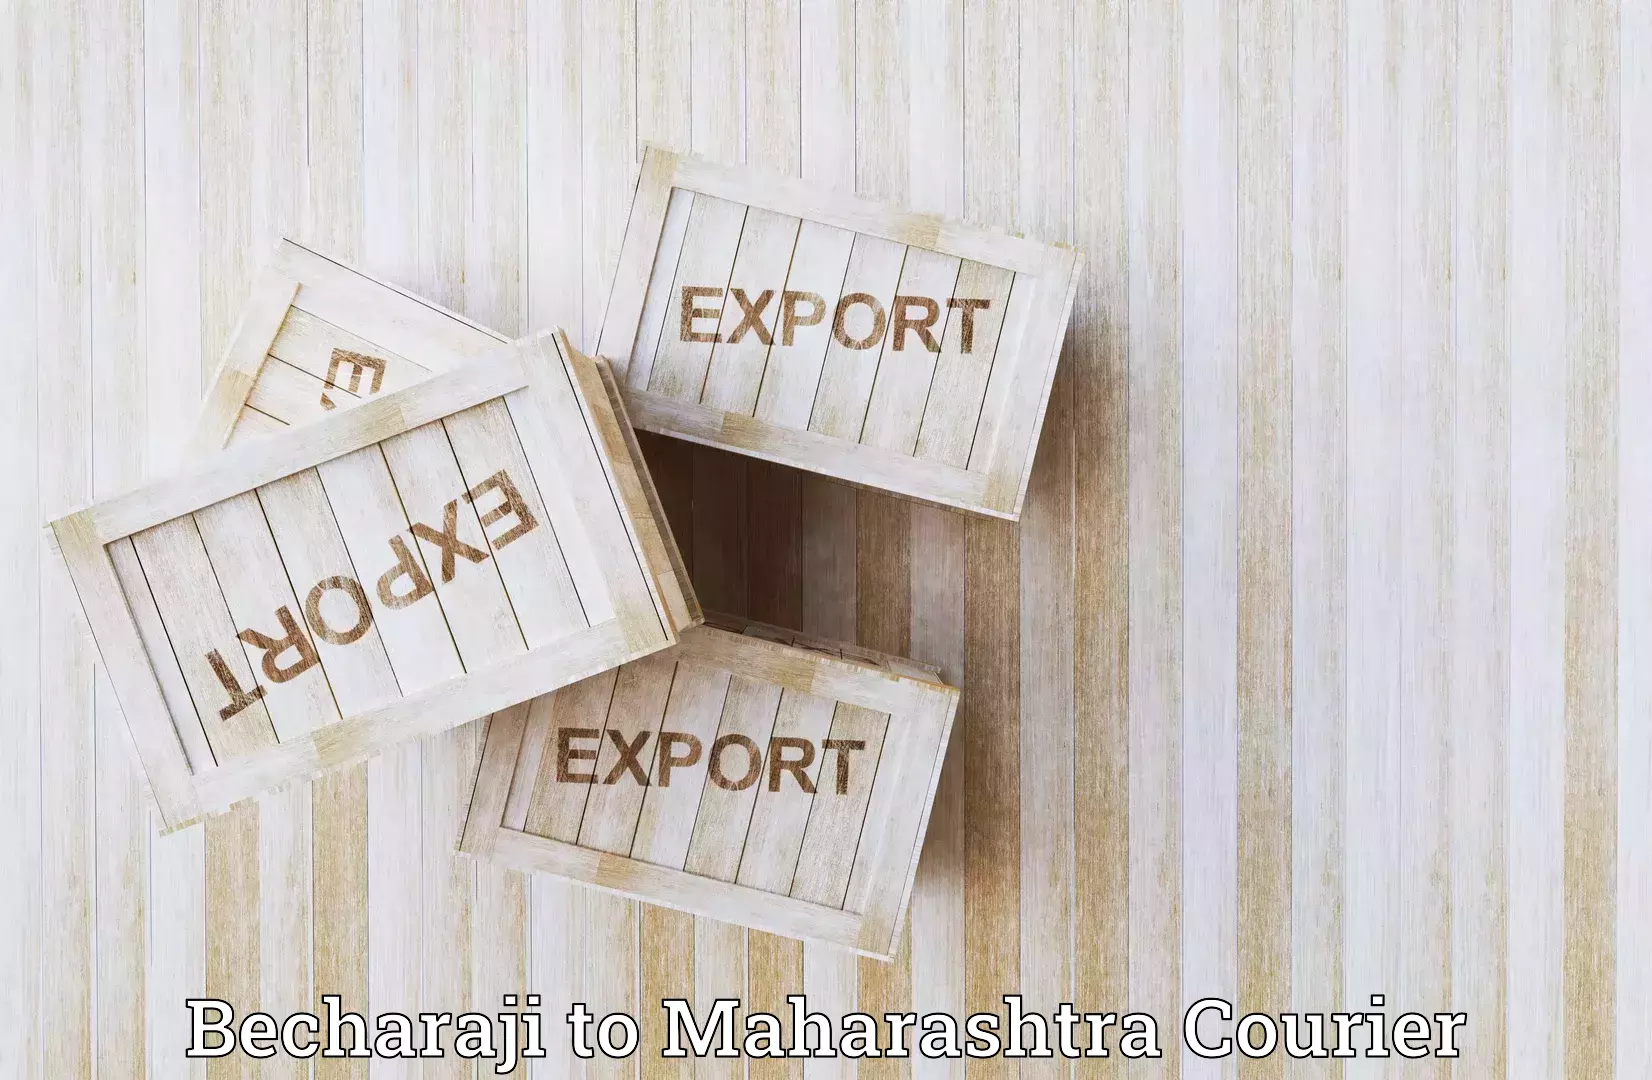 Global shipping solutions Becharaji to Pathardi